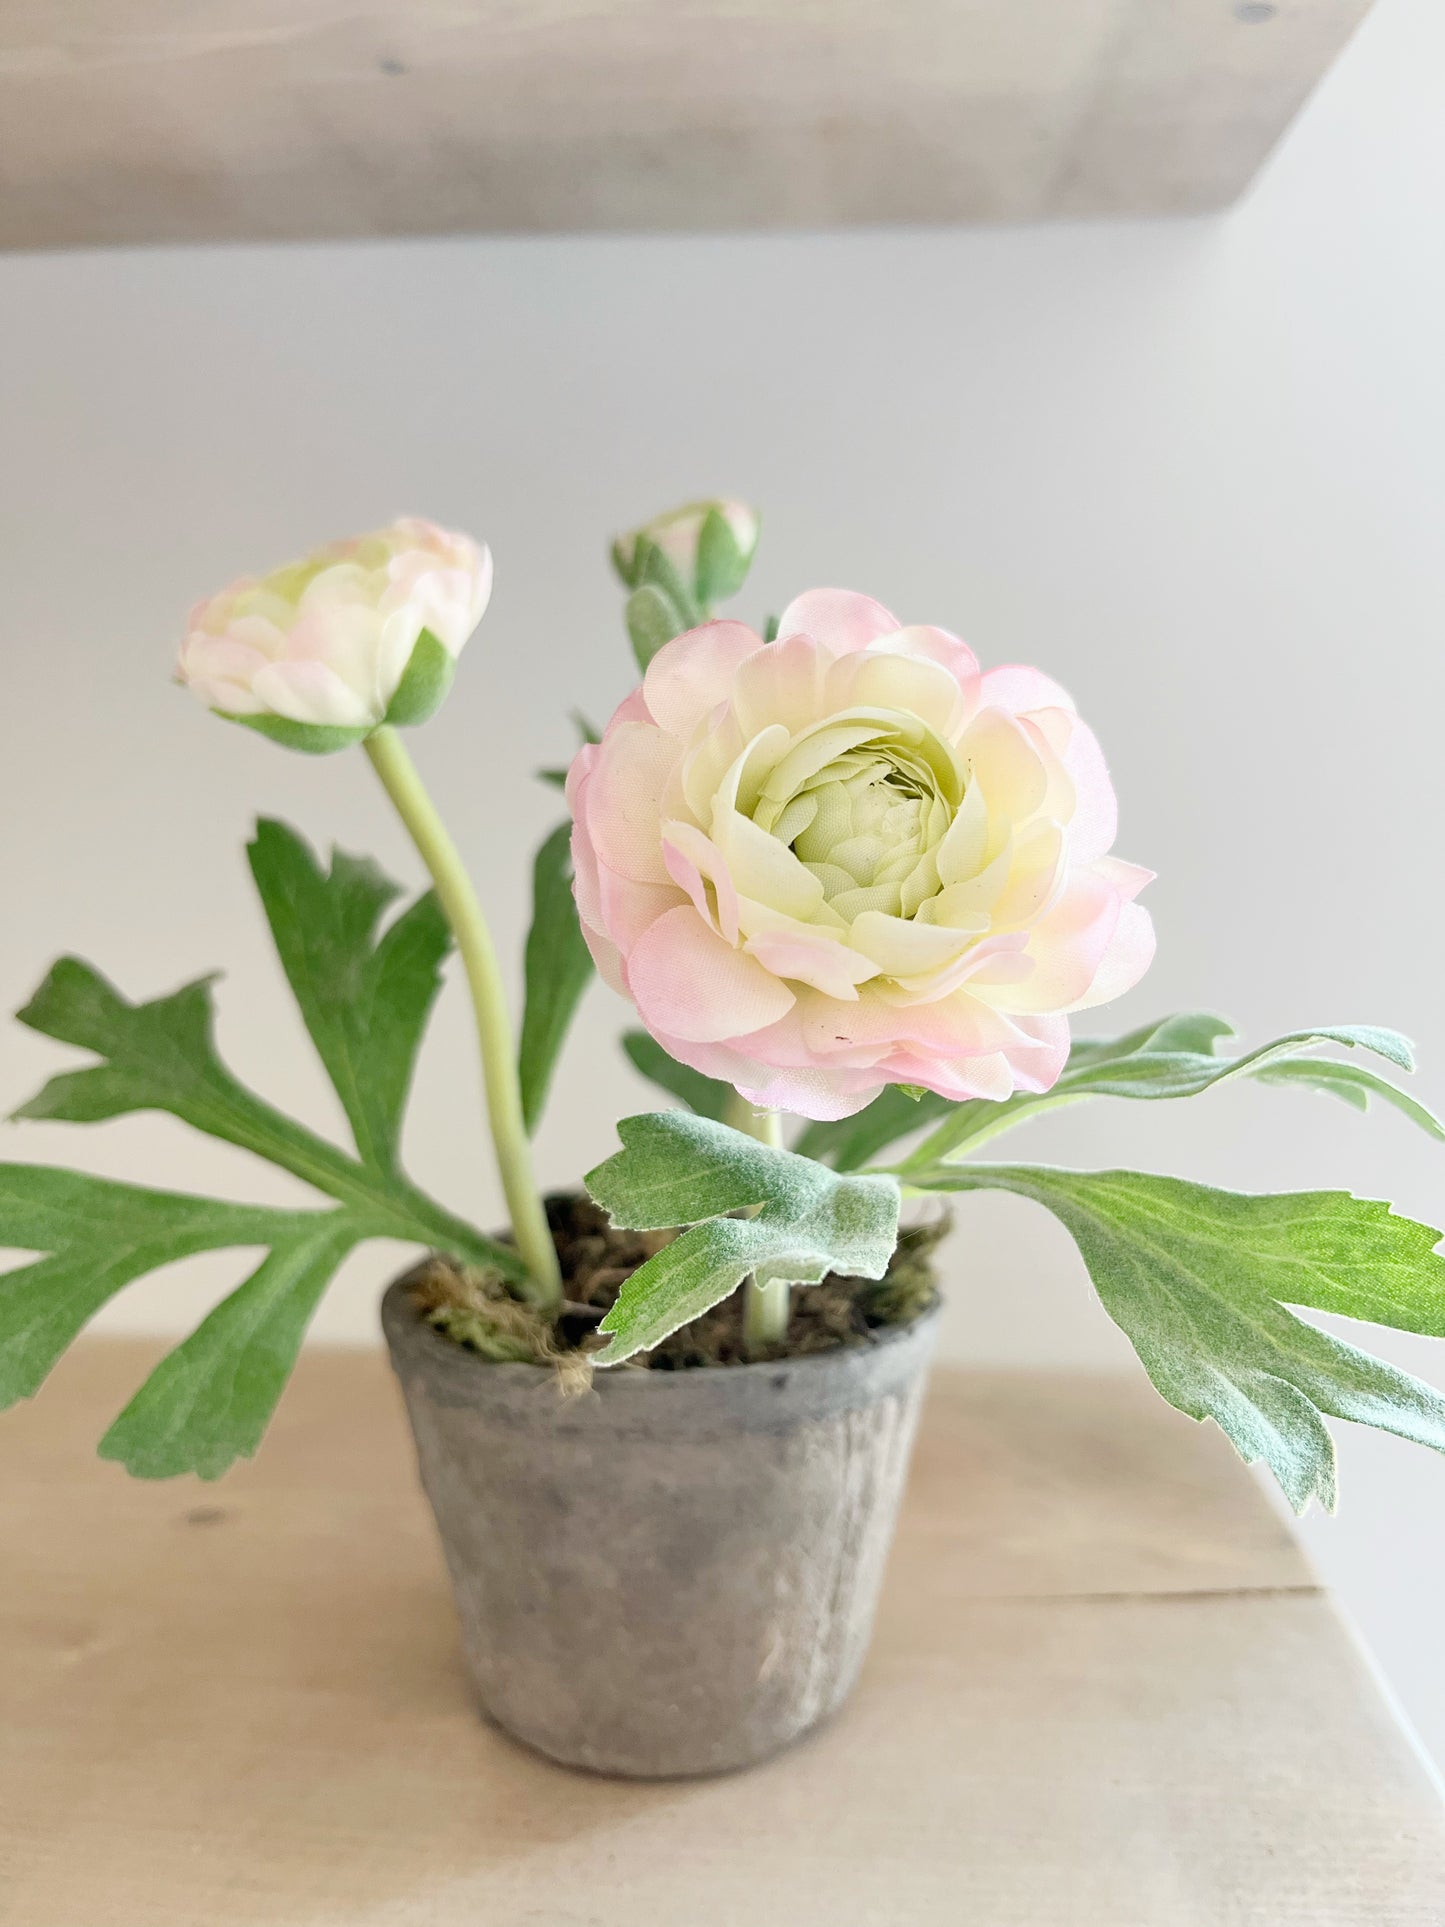 Rose Ranunculus In Ceramic Pot